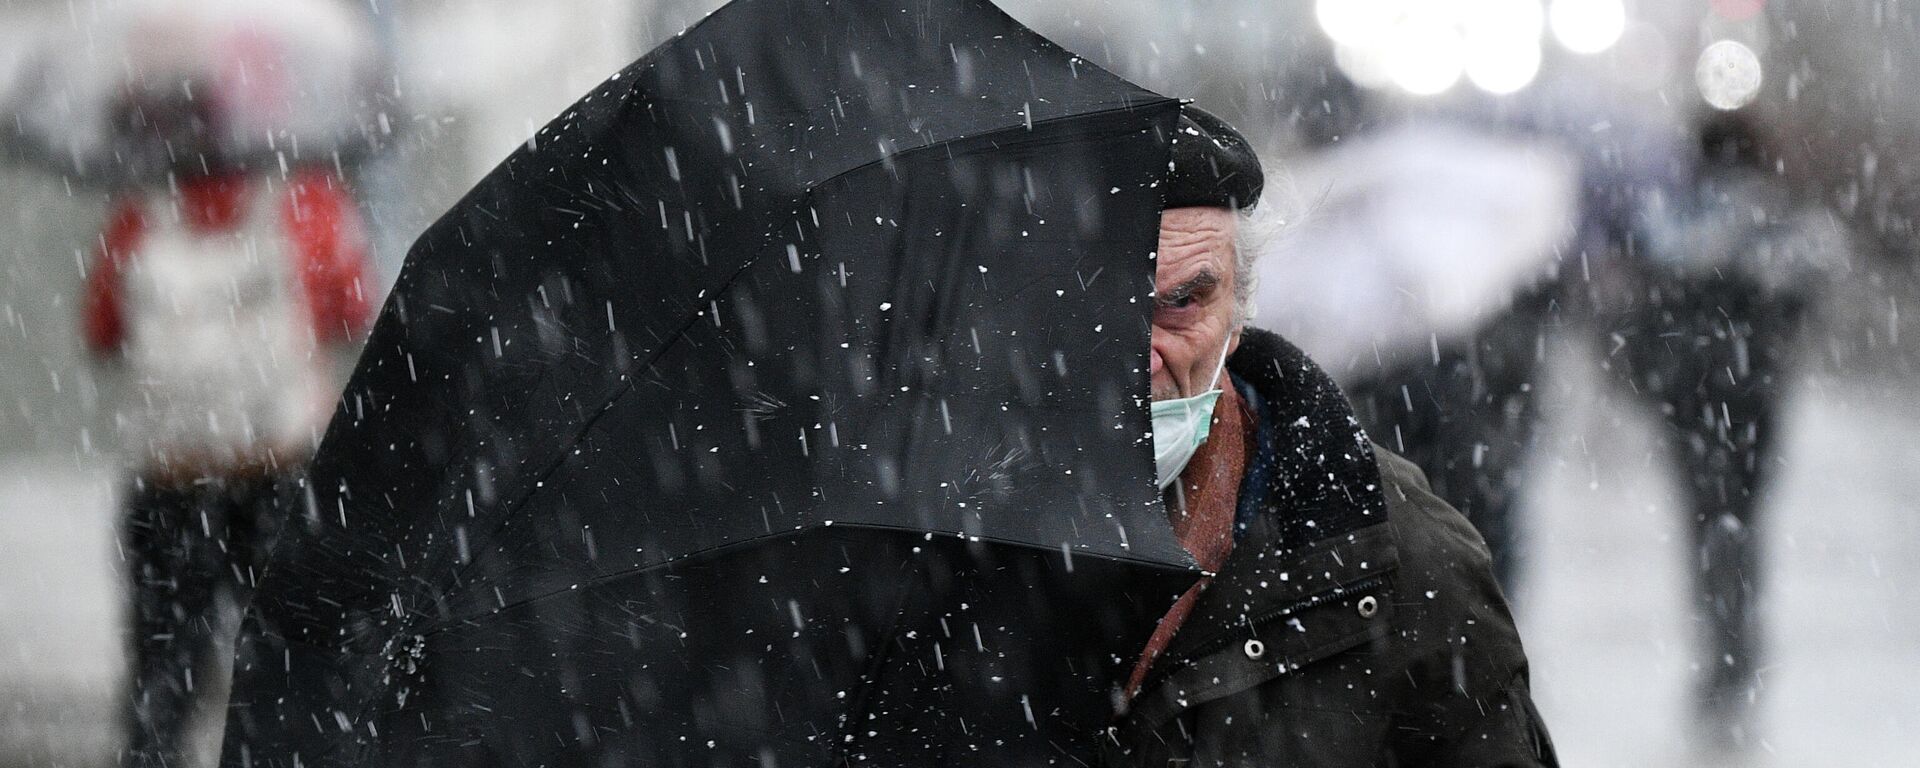 Пожилой мужчина под зонтом  - Sputnik Беларусь, 1920, 27.11.2021